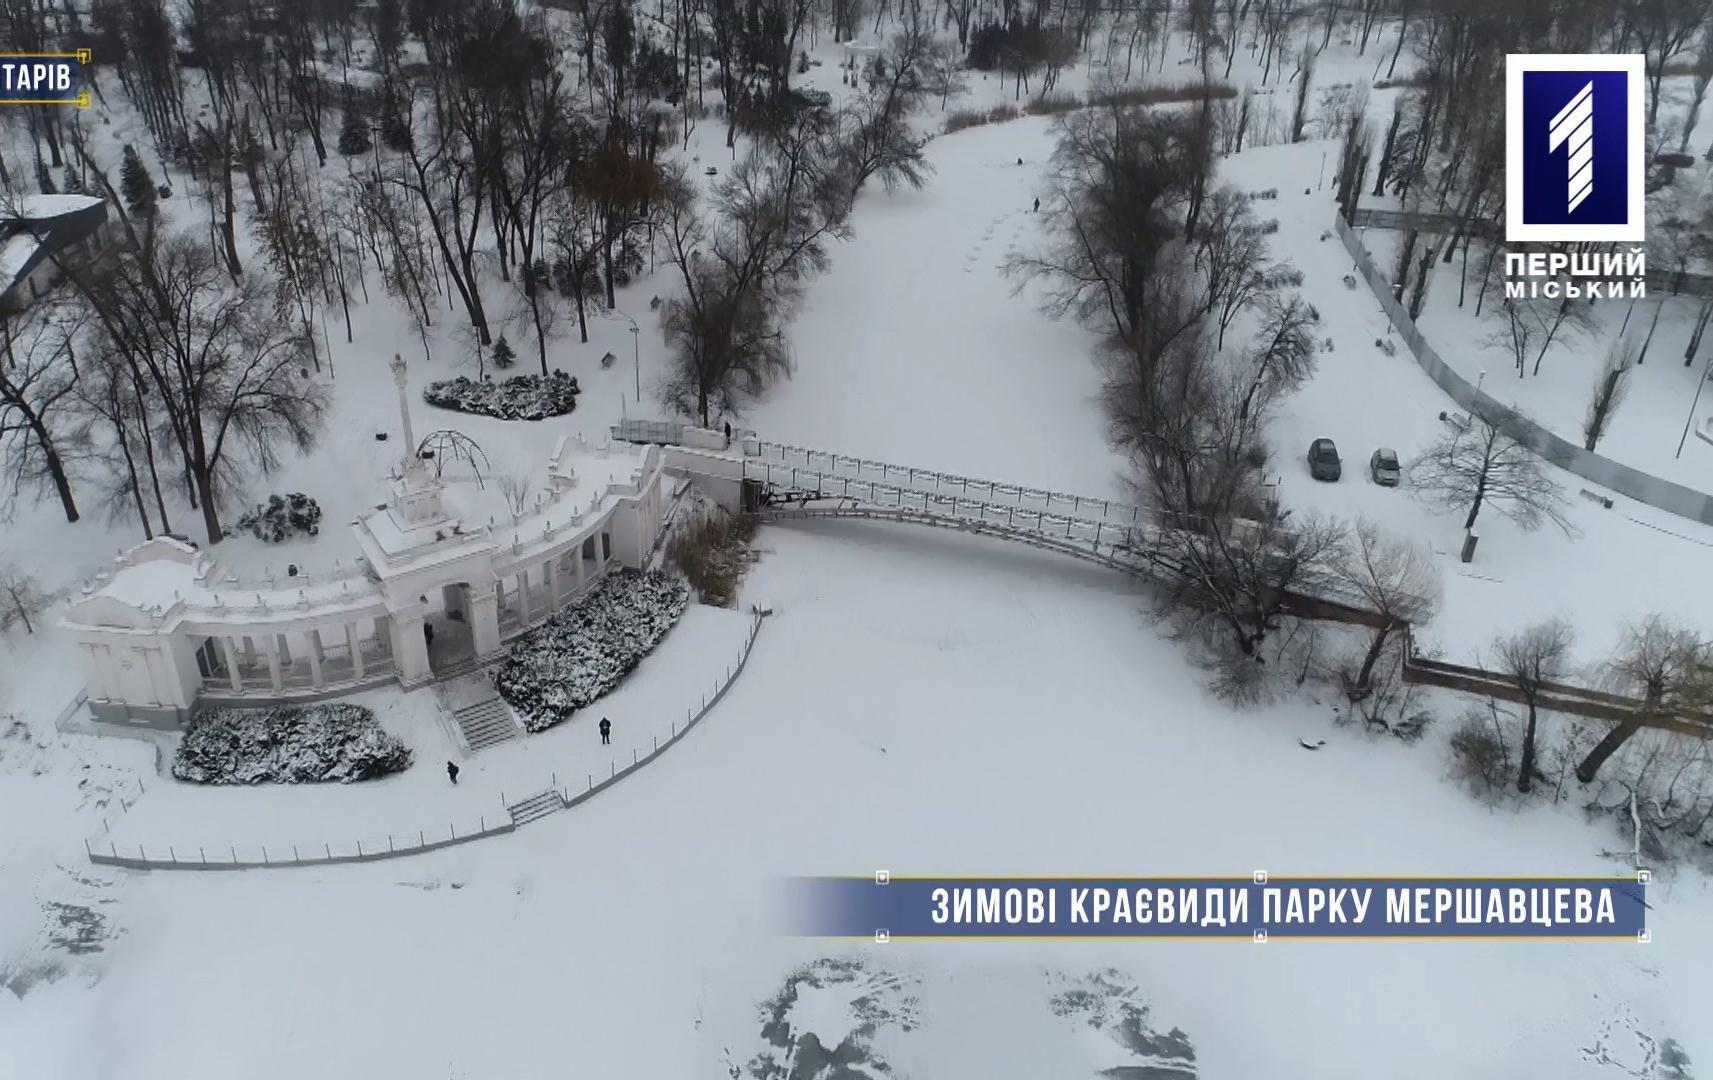 Без коментарів: зимові краєвиди у парку Мершавцева